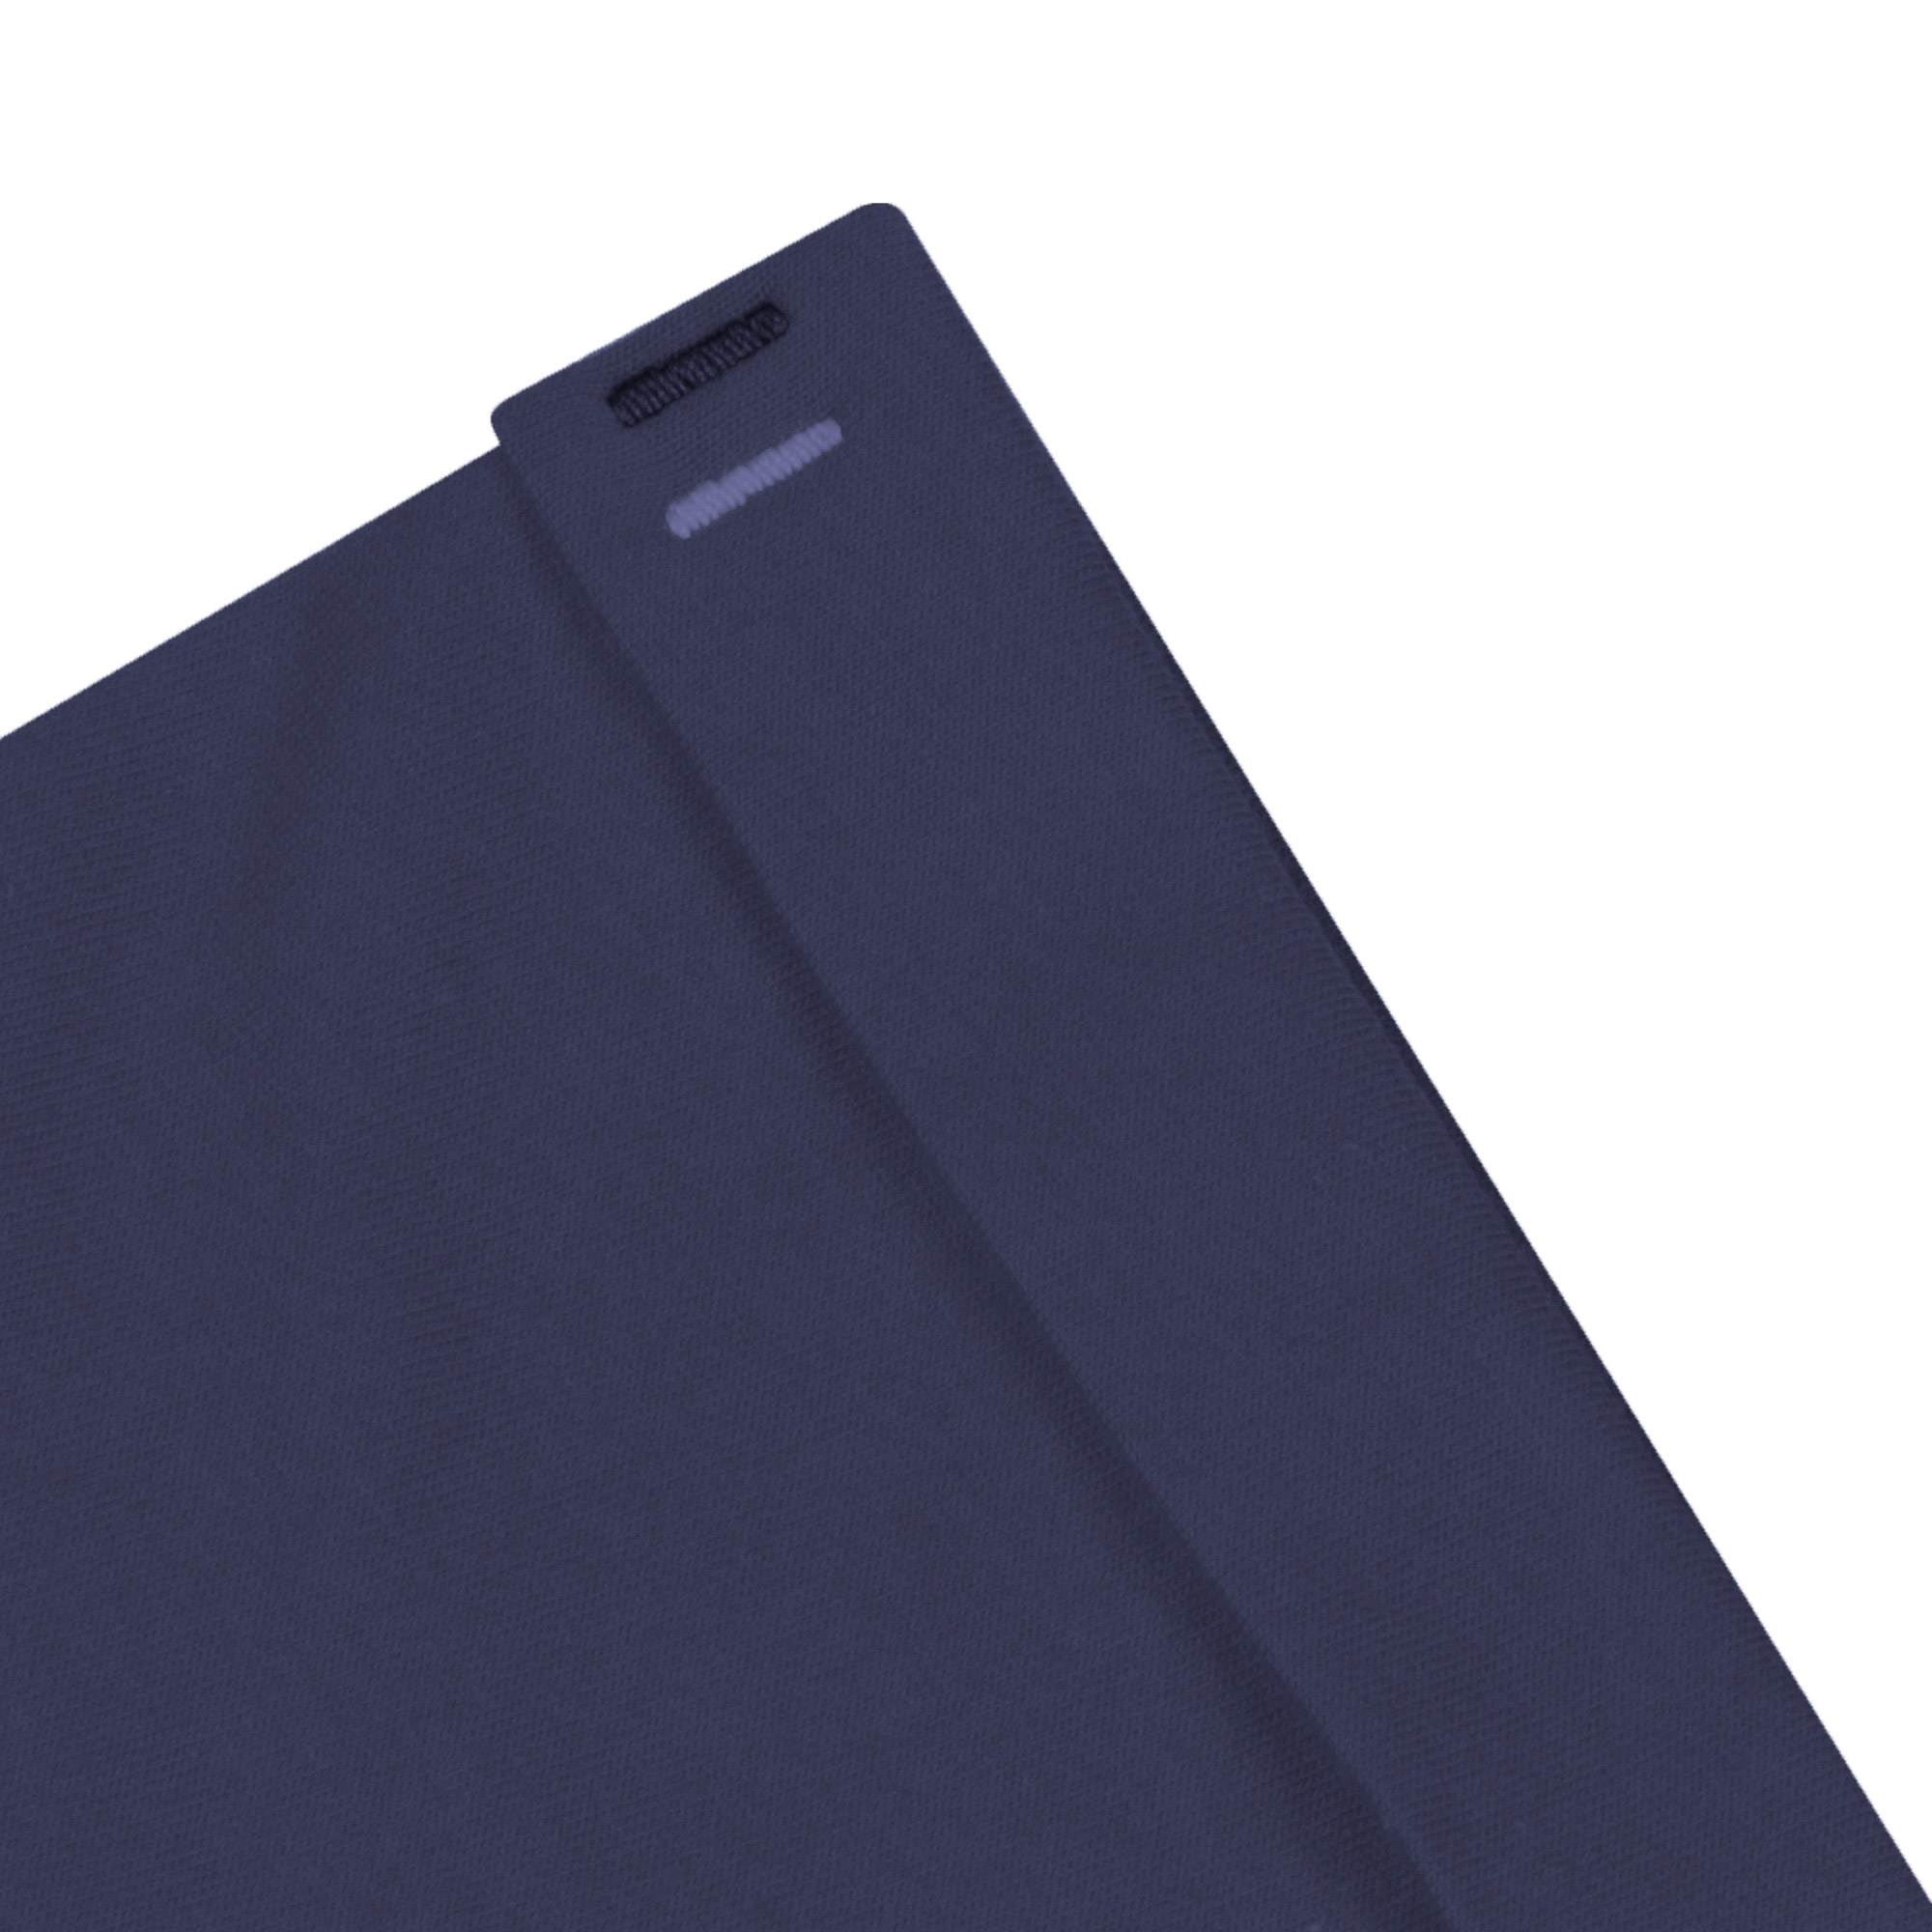 Мужская футболка Pantelemone MF-898 темно-синяя 54, цвет темно-синий, размер 54 - фото 5